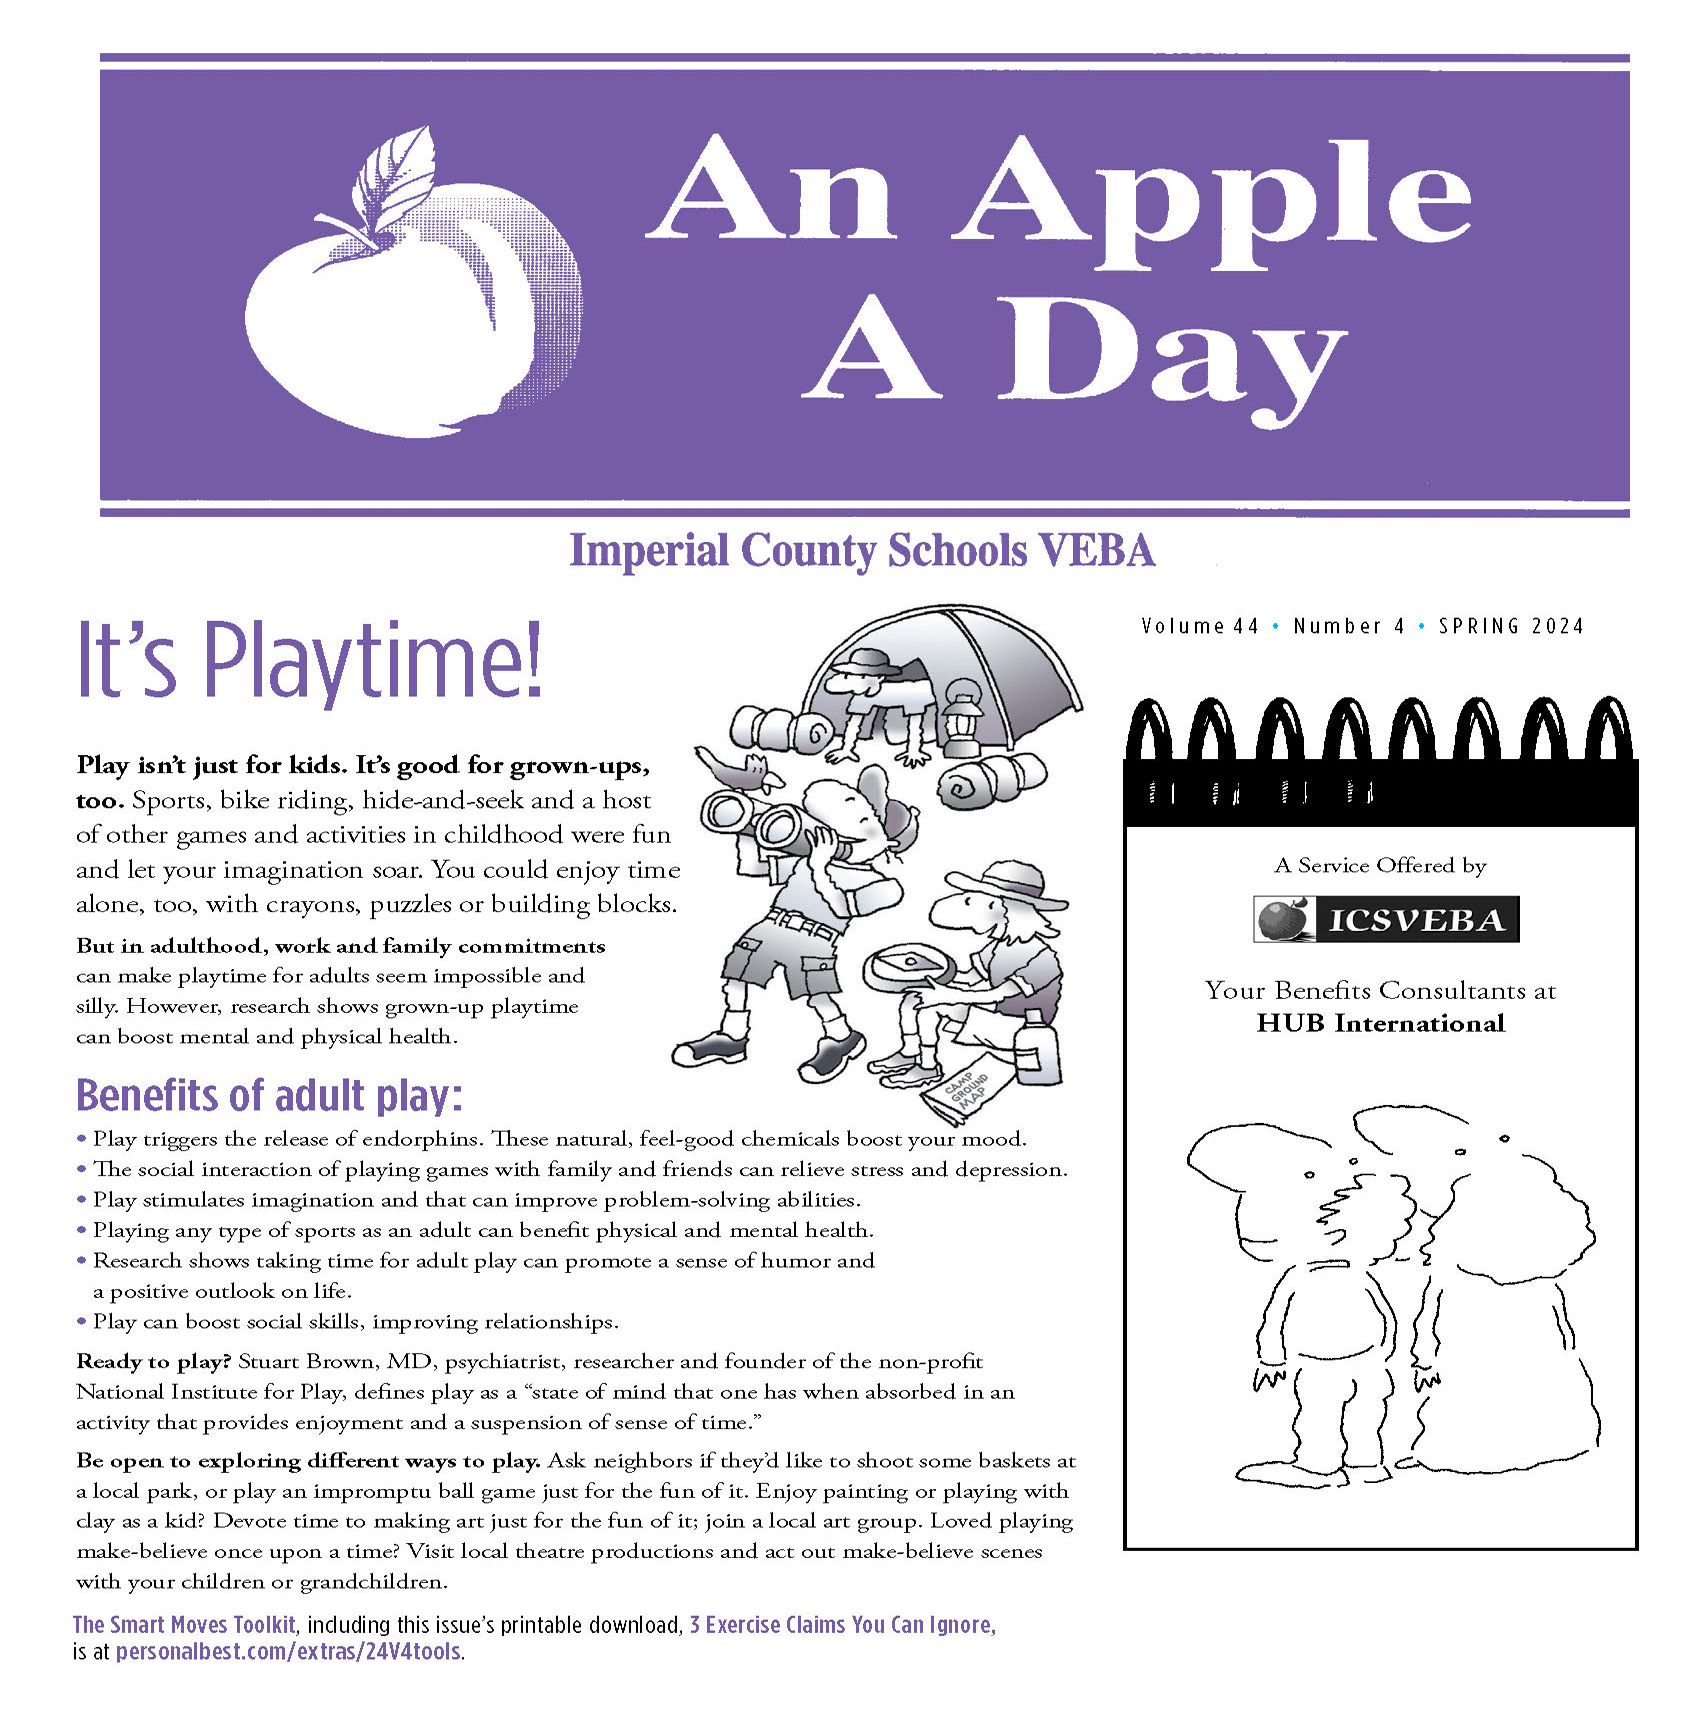 "An Apple A Day" - HUB Wellness Newsletter Spring 2024 Vol. 44